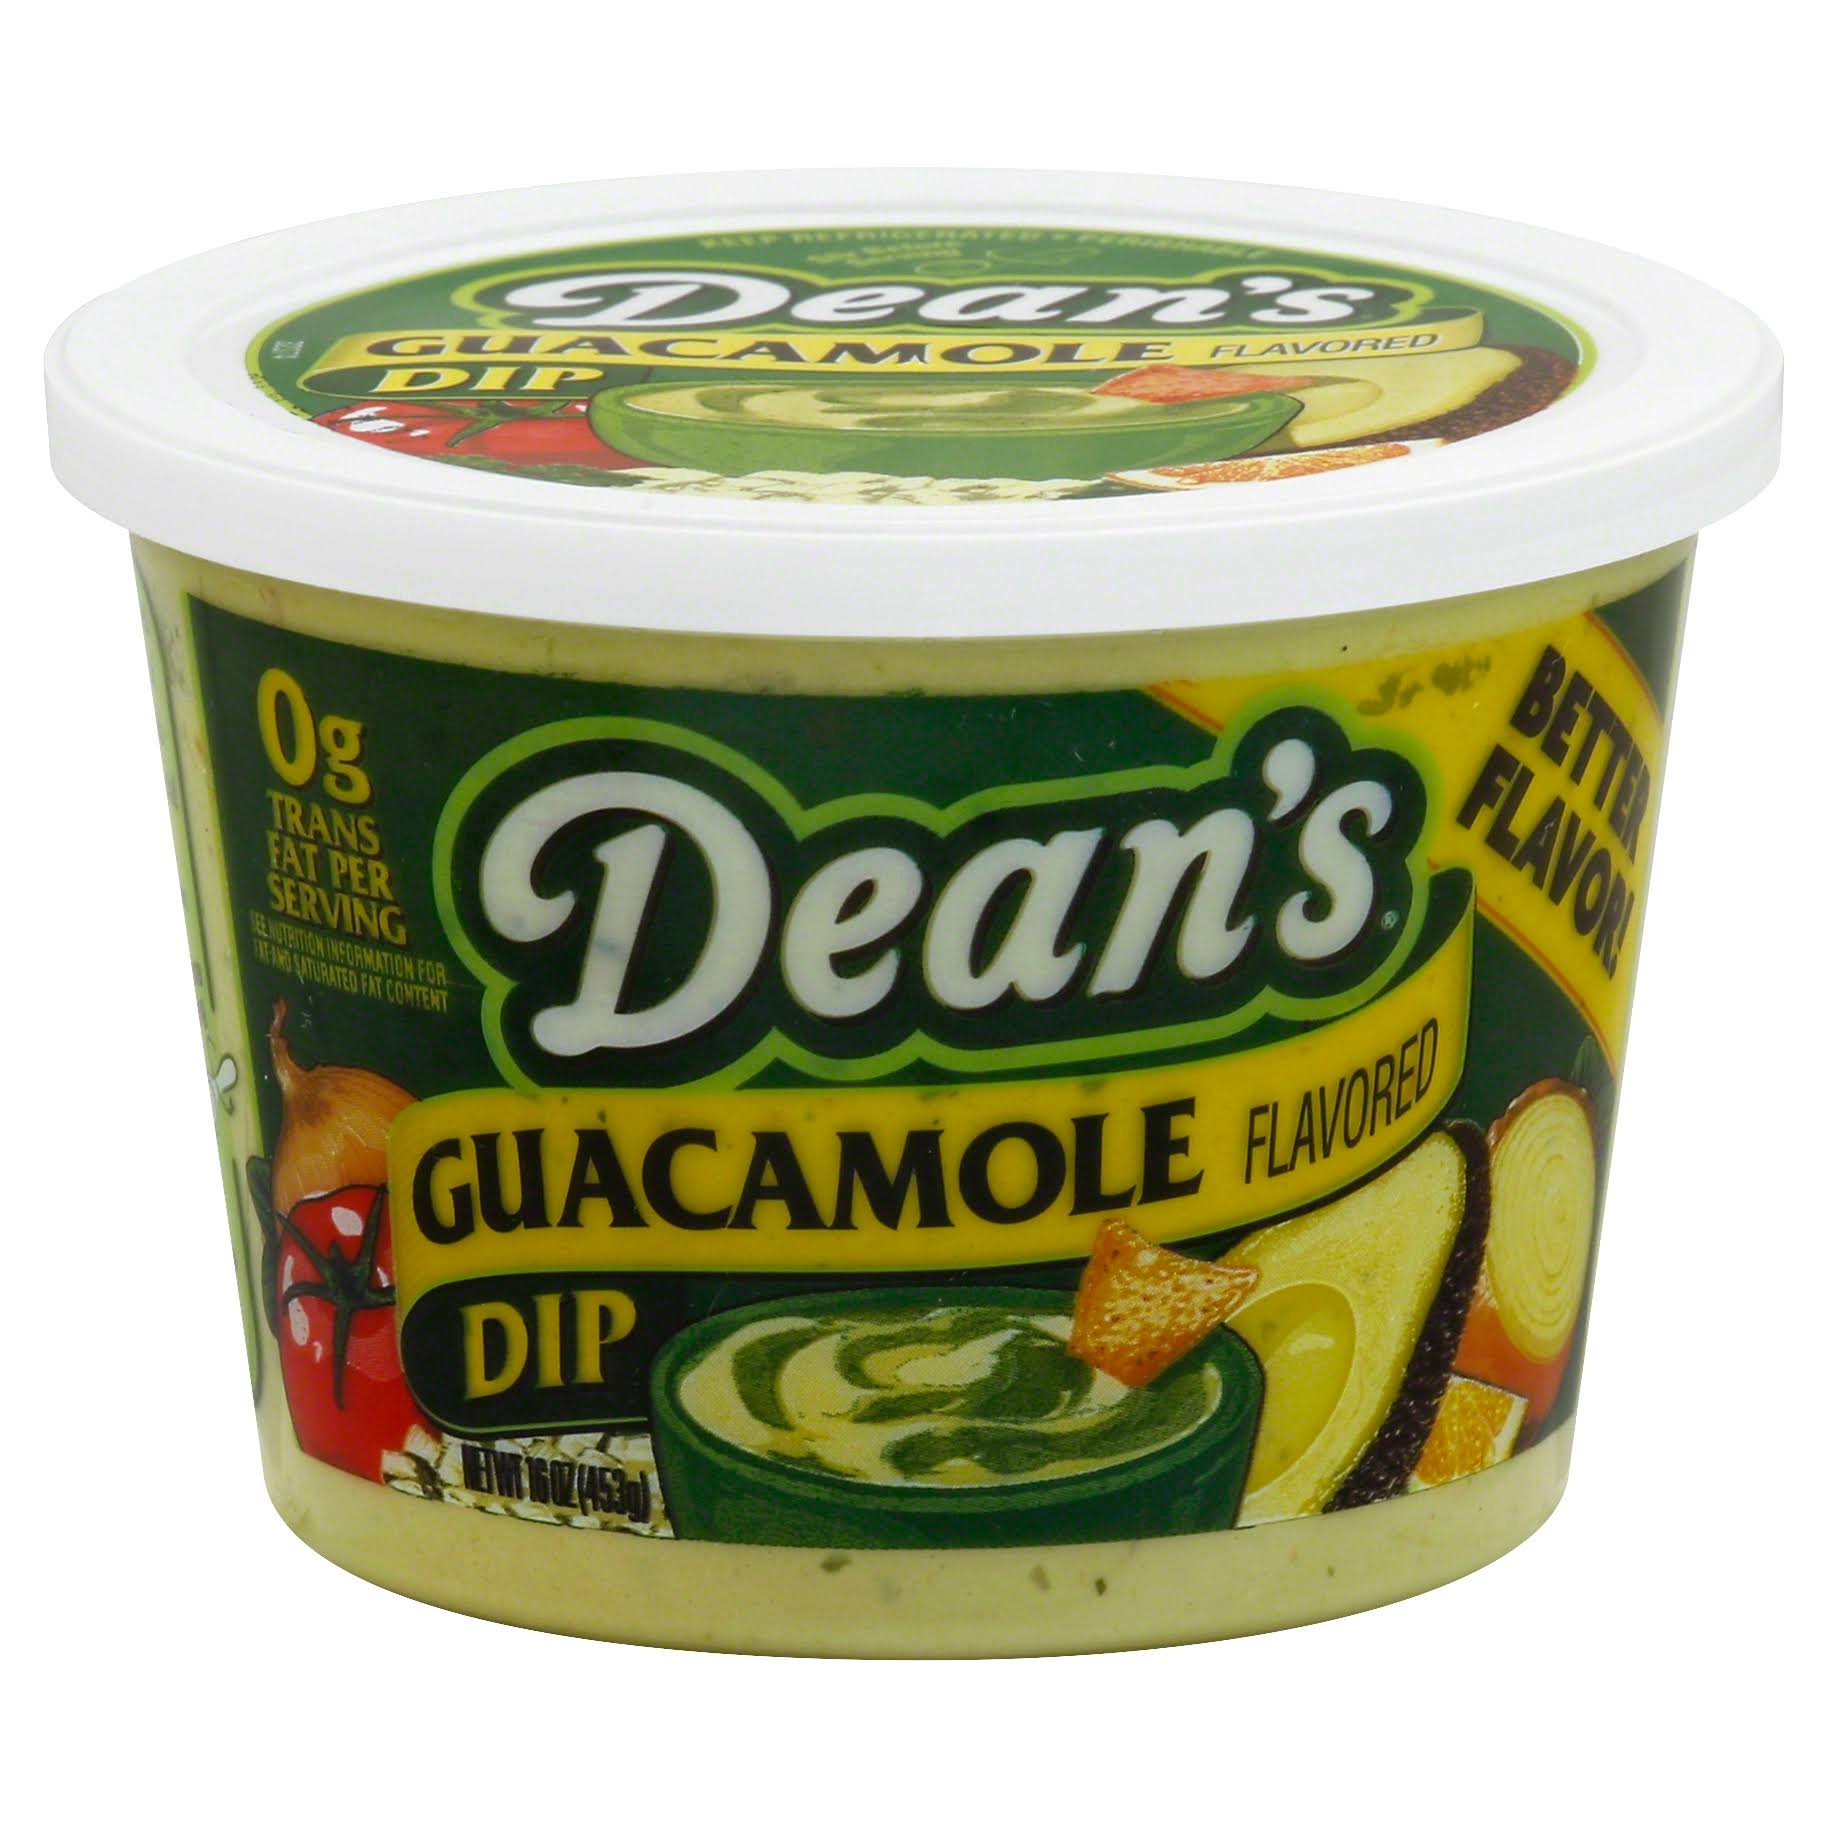 Dean's Dairy Dip - Guacamole Flavored, 16oz